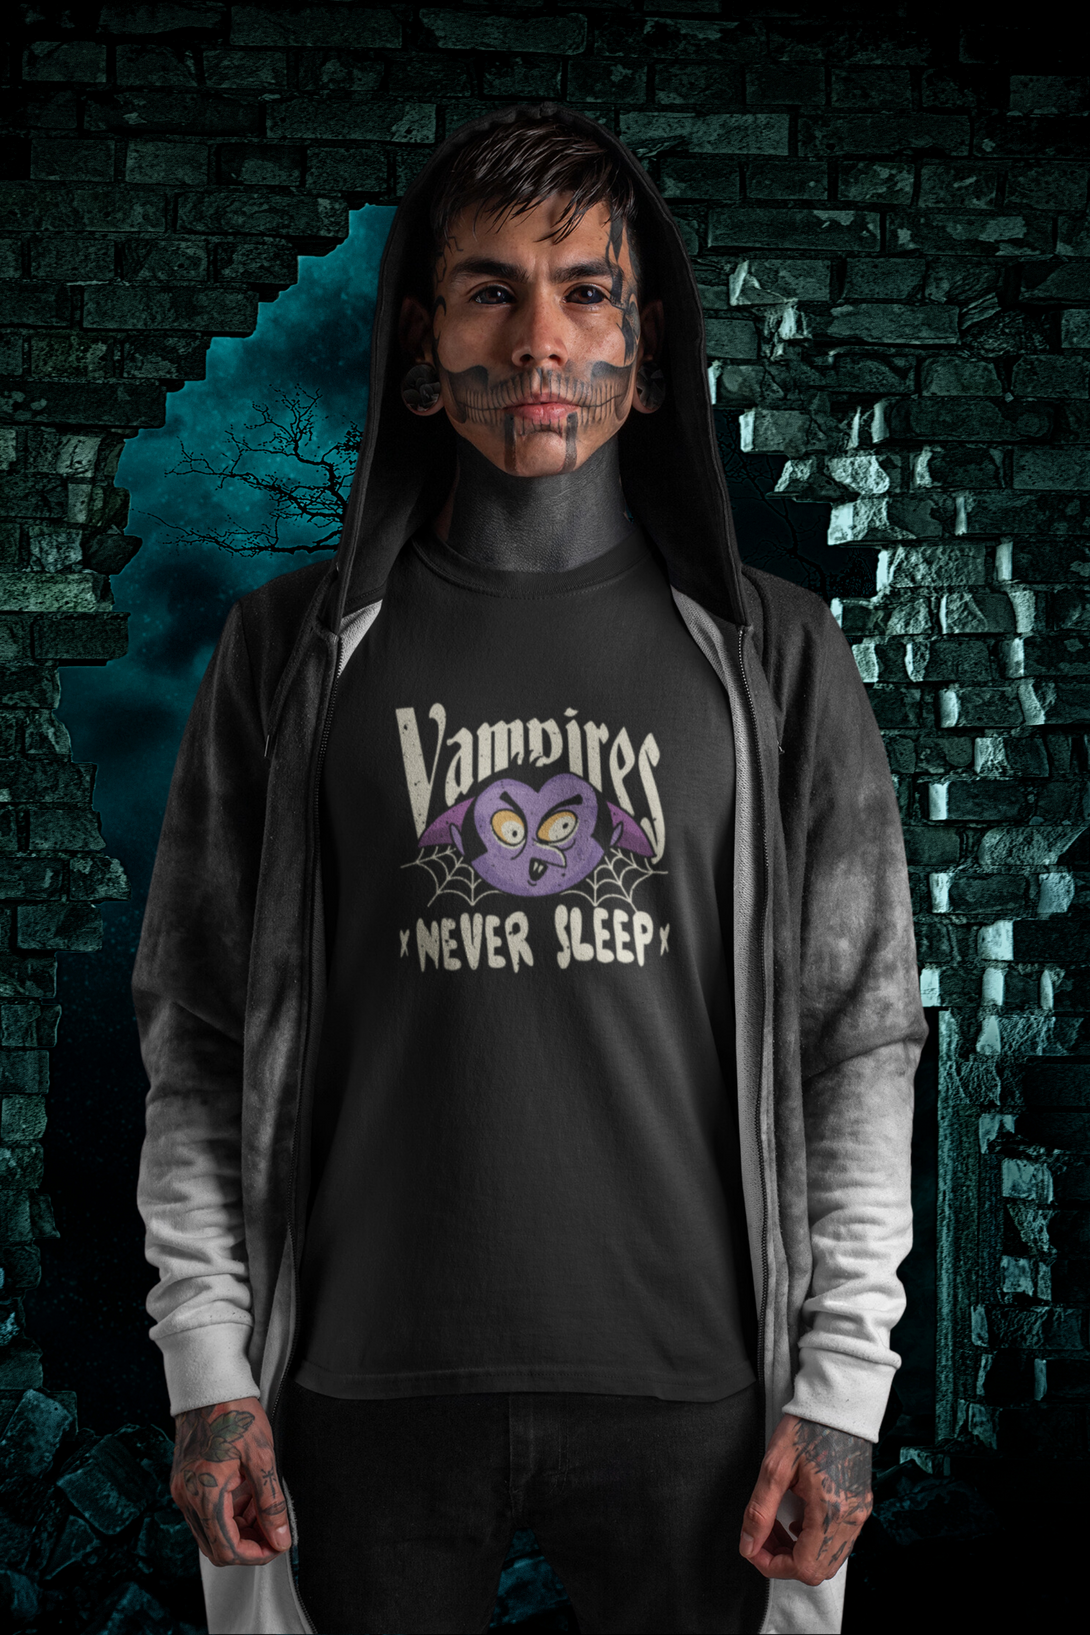 Vampires Never Sleep Printed T-Shirt For Men - WowWaves - 6